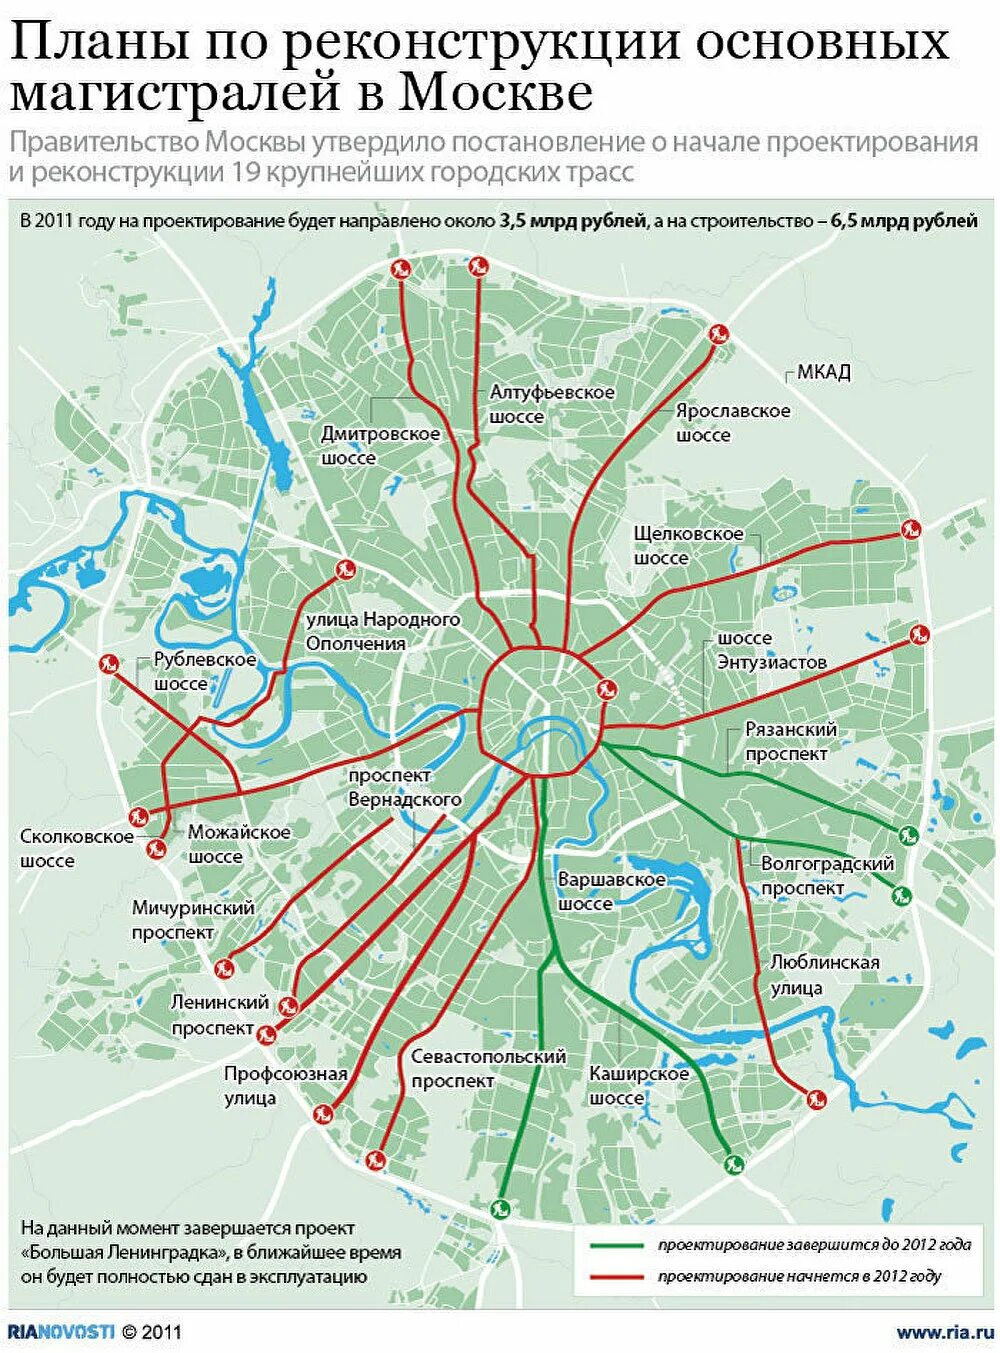 Название дорог в москве. Карта Москвы основные магистрали. Схема основных магистралей Москвы. Карта основных магистралей Москвы. Карта магистралей Москвы 2022.